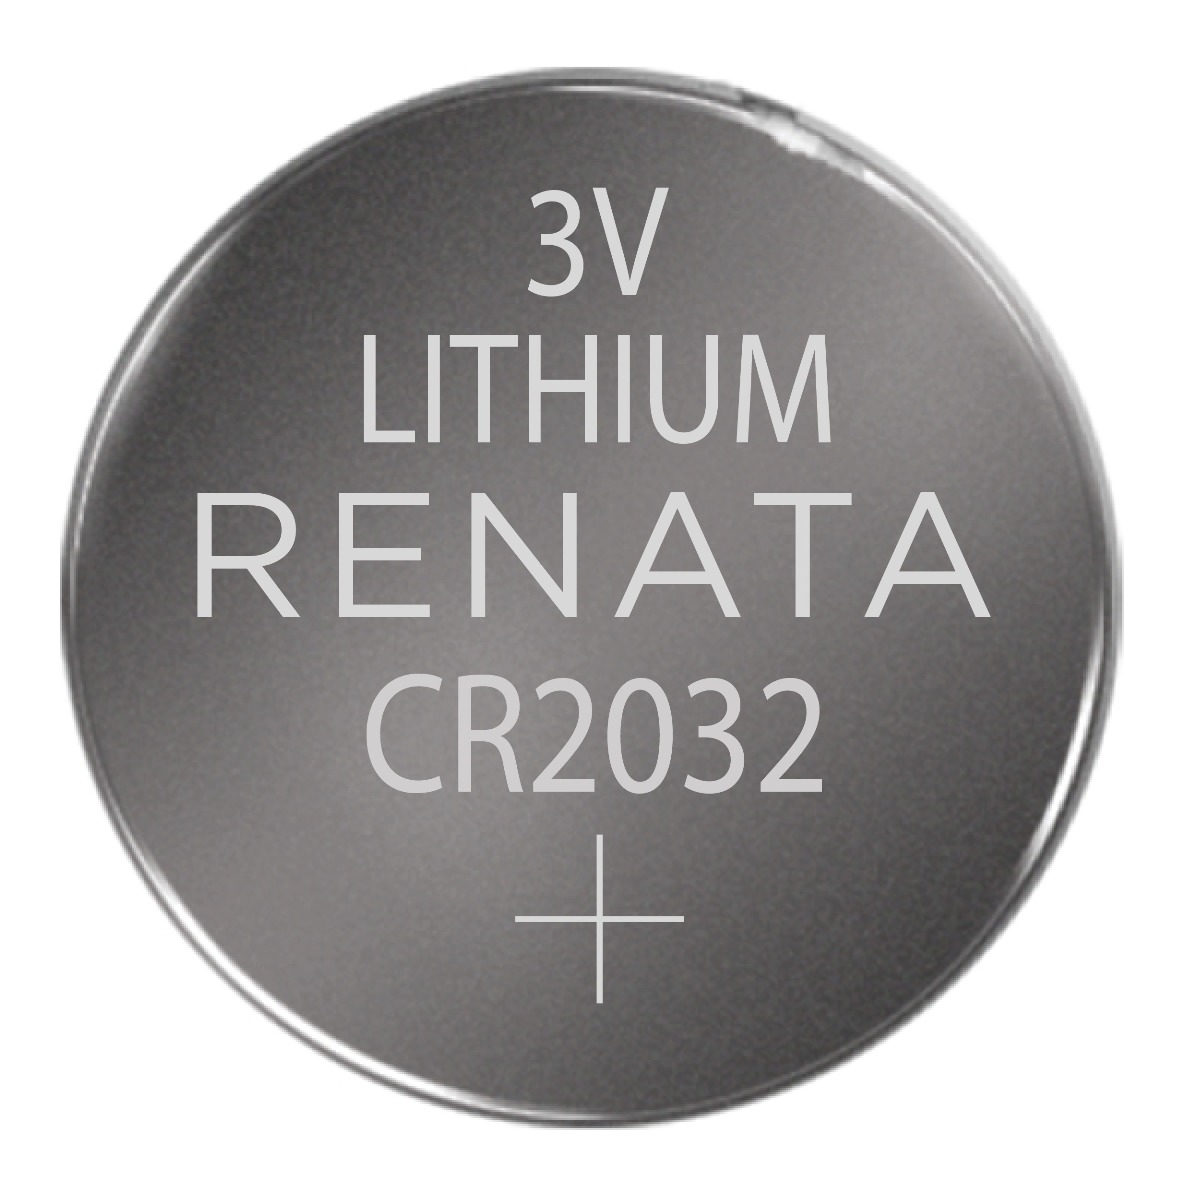 fordøje heks Skur Renata CR2032 Lithium 3V Coin Cell Battery, Bulk